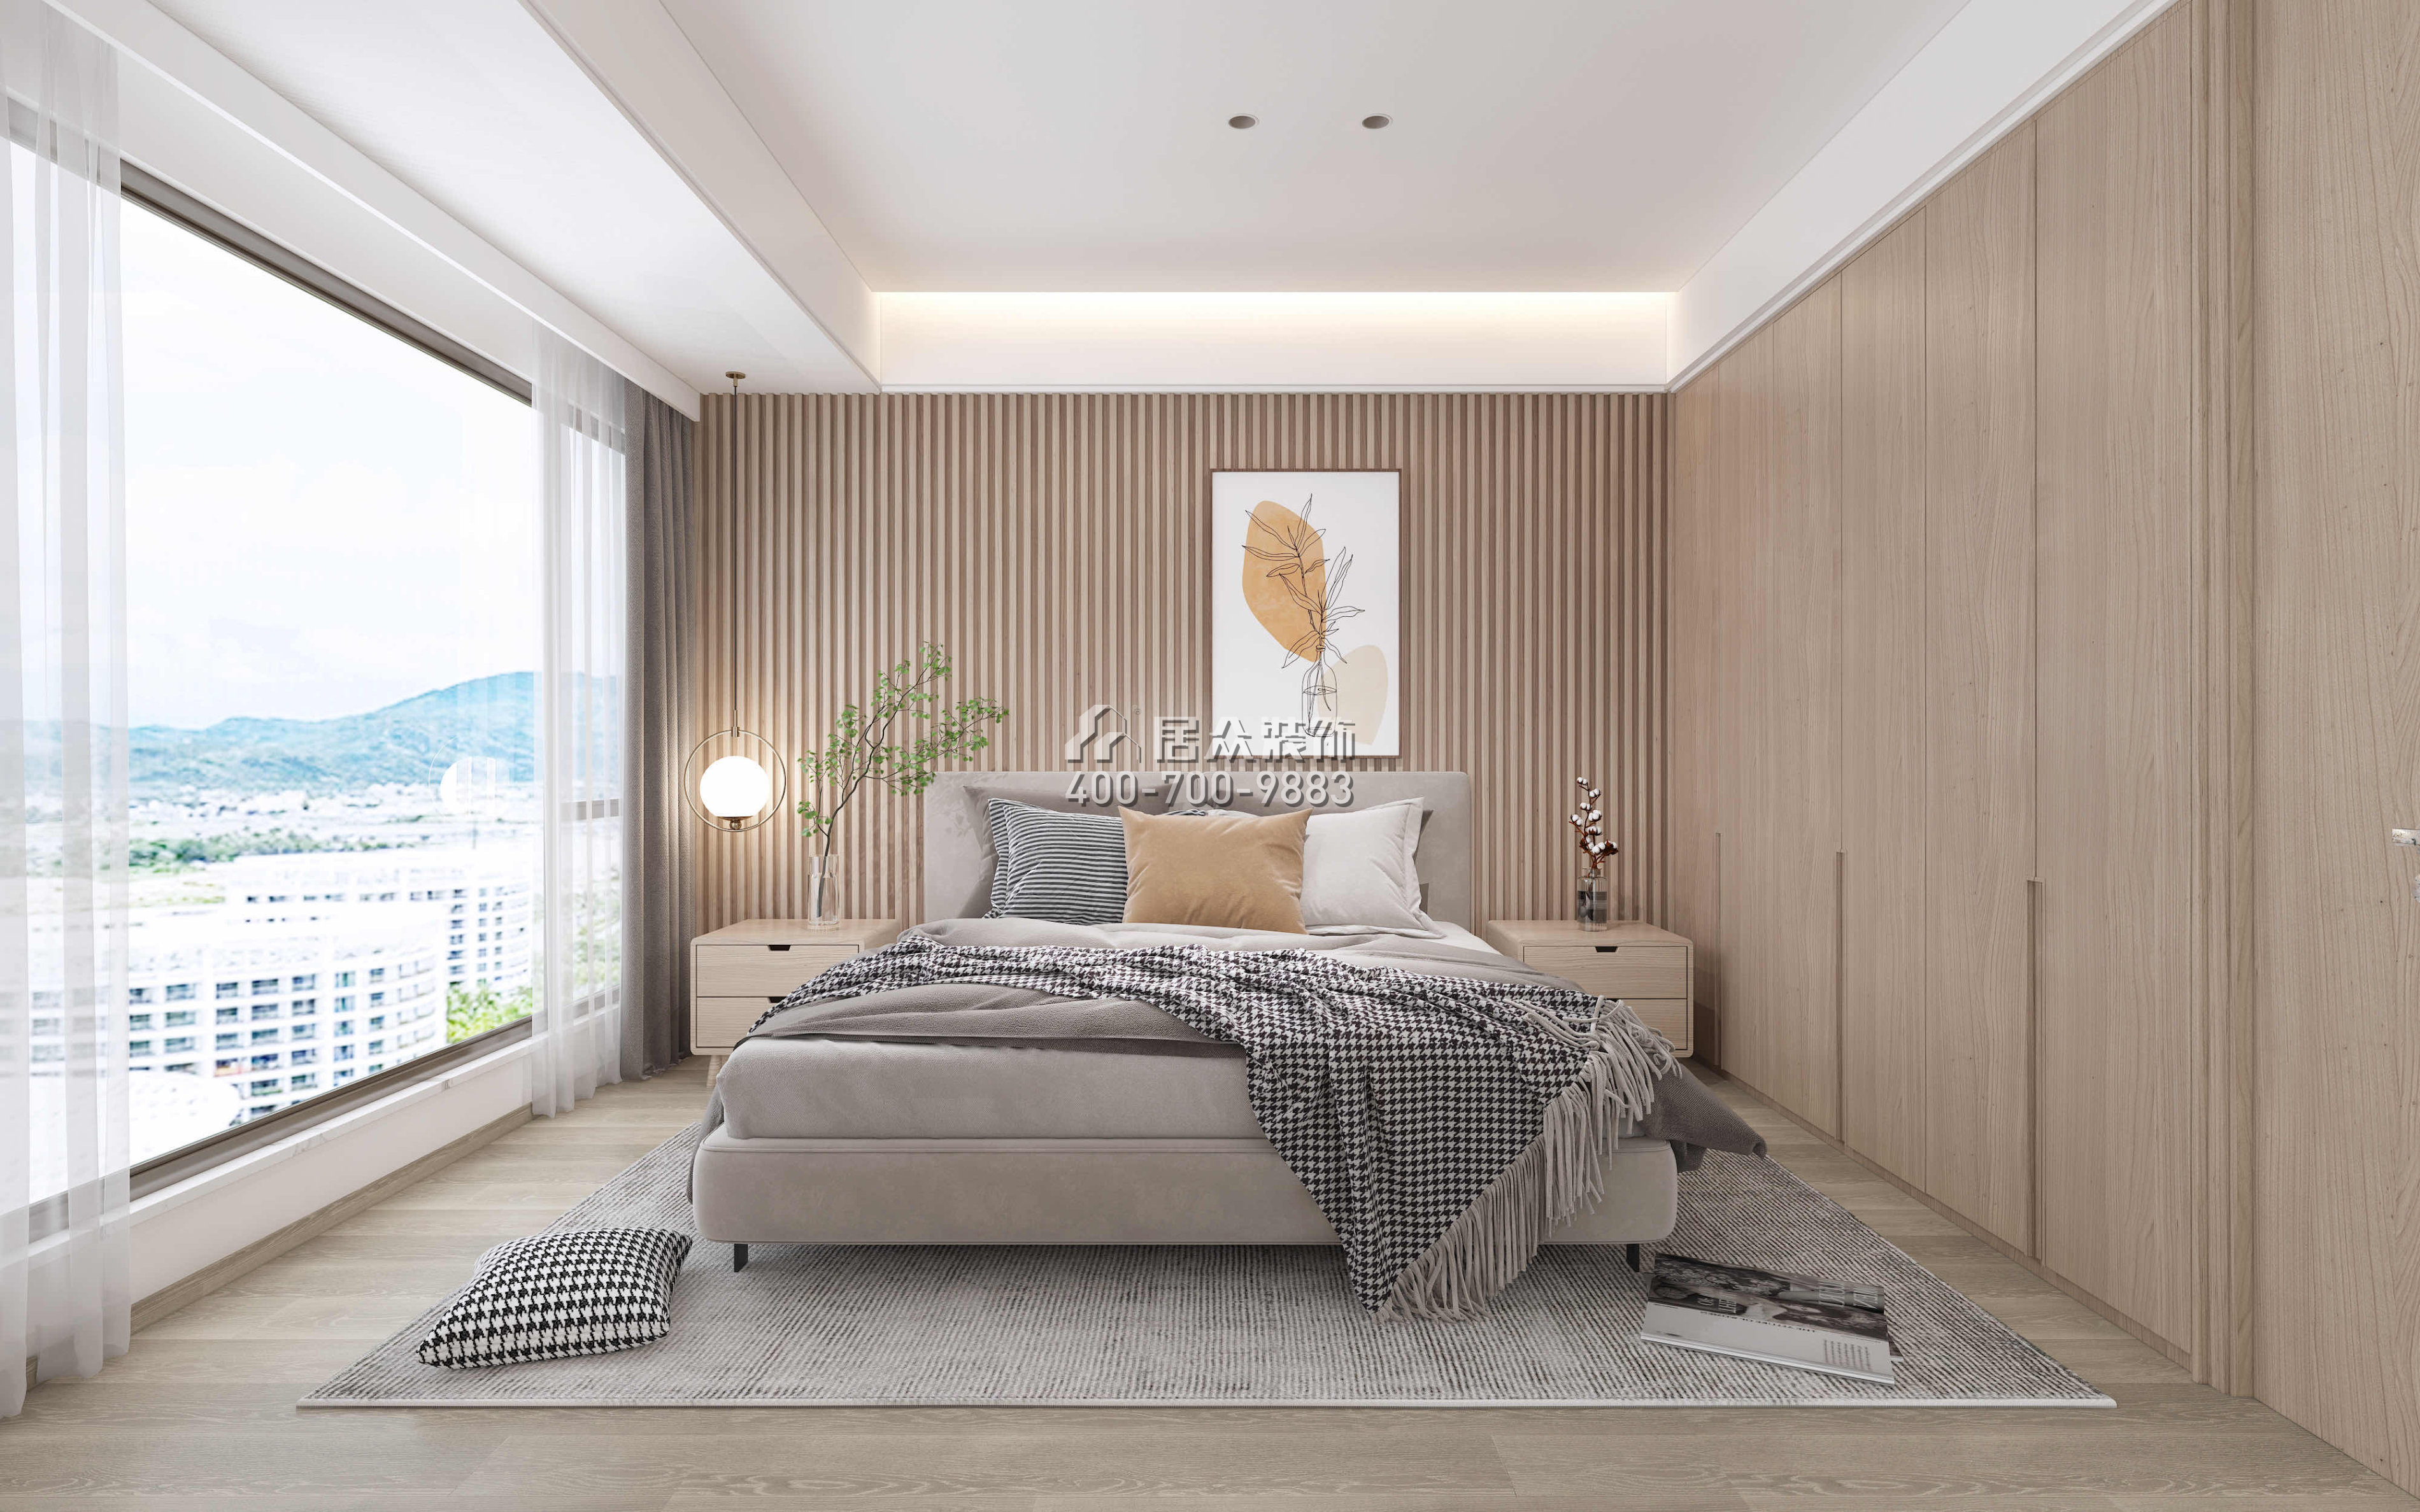 星河明居115平方米现代简约风格平层户型卧室装修效果图